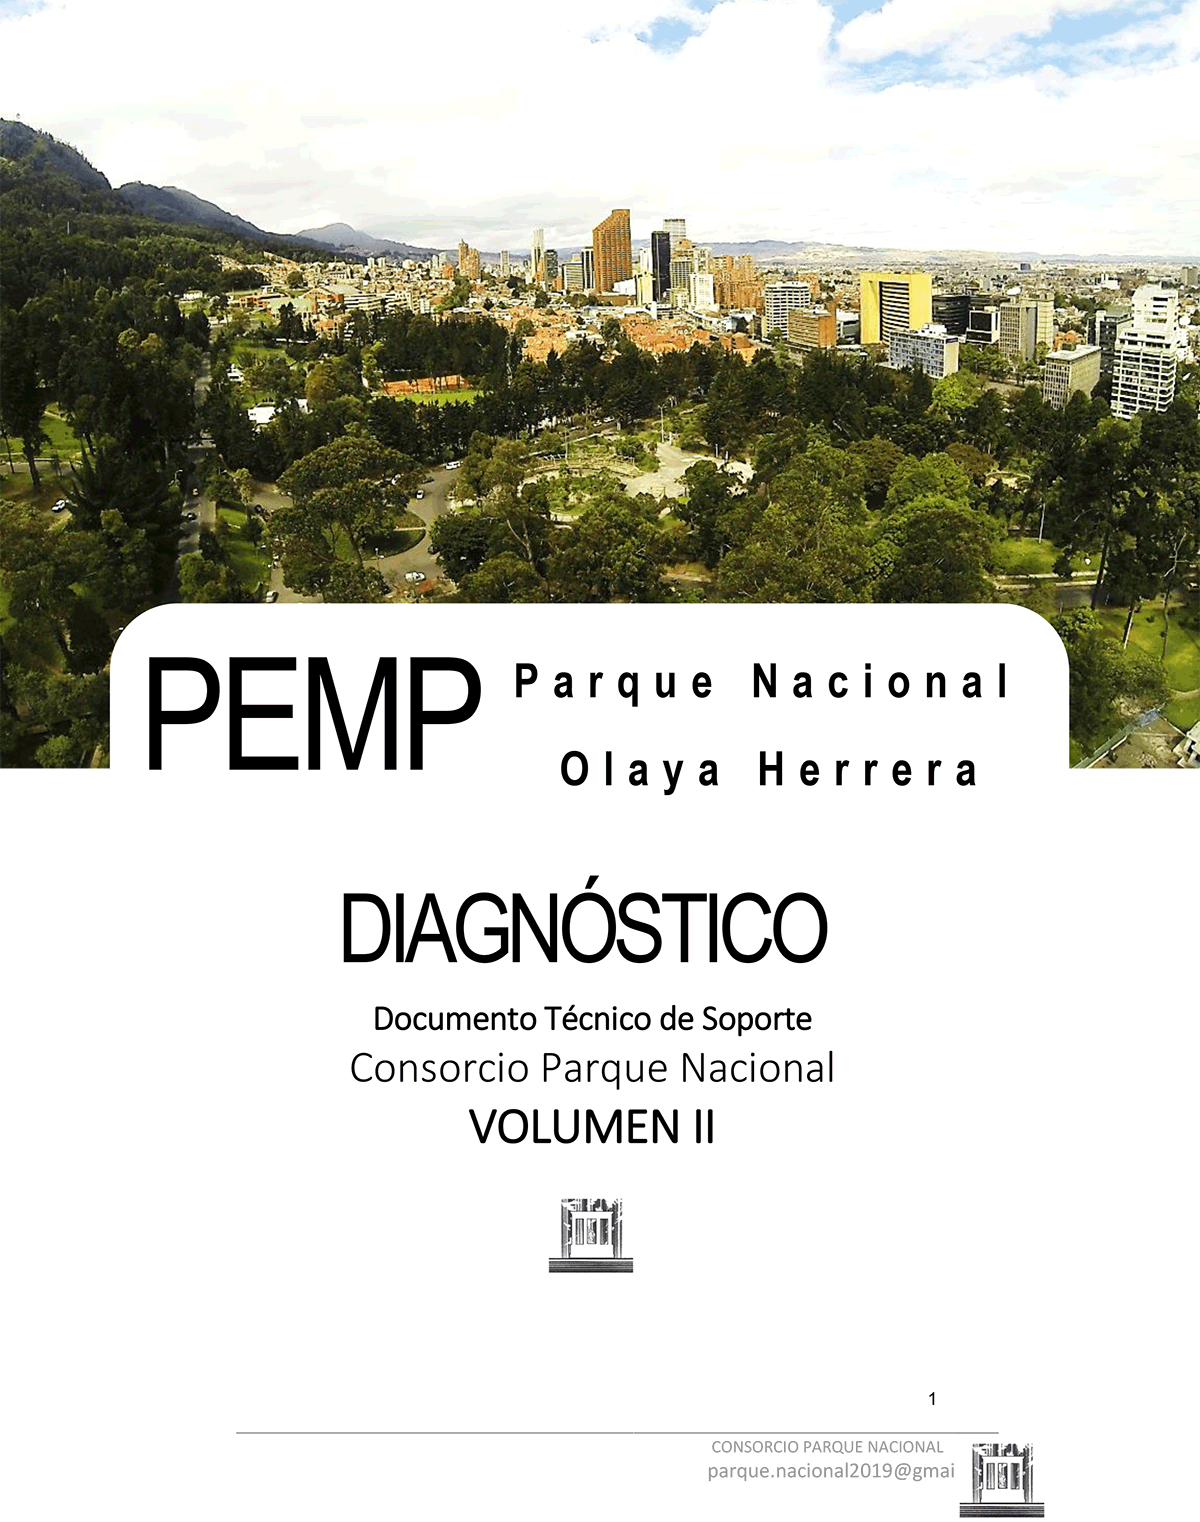 El PEMP para el Parque Nacional Olaya Herrera de la ciudad de Bogotá, se enmarca dentro de los lineamientos definidos por el Ministerio de Cultura y la normatividad adoptada para ellos. El decreto 763 de 2009, el cual reglamentó la ley 1185 de 2008 frente al Patrimonio Cultural de la Nación, de naturaleza material, determinó funciones que deben ser desarrolladas por las entidades territoriales en el ámbito de su jurisdicción respecto de la protección, gestión y divulgación del patrimonio cultural; y con la Resolución 0983 de 2010, se fijan los lineamientos técnicos y administrativos, con el propósito de apoyar la ejecución de la Ley 1185 de 2008 y el Decreto 763 de 2009. Estos elementos jurídicos contienen las regulaciones, definiciones, conceptos, principios y competencias que se aplican a lo largo de este proceso. Es de mencionar que, en los términos contractuales del presente proceso, se hace un esfuerzo especial en el proceso de divulgación y socialización y en la inclusión especial de un experto en paisaje, por lo que la aproximación metodológica involucra dichas variaciones